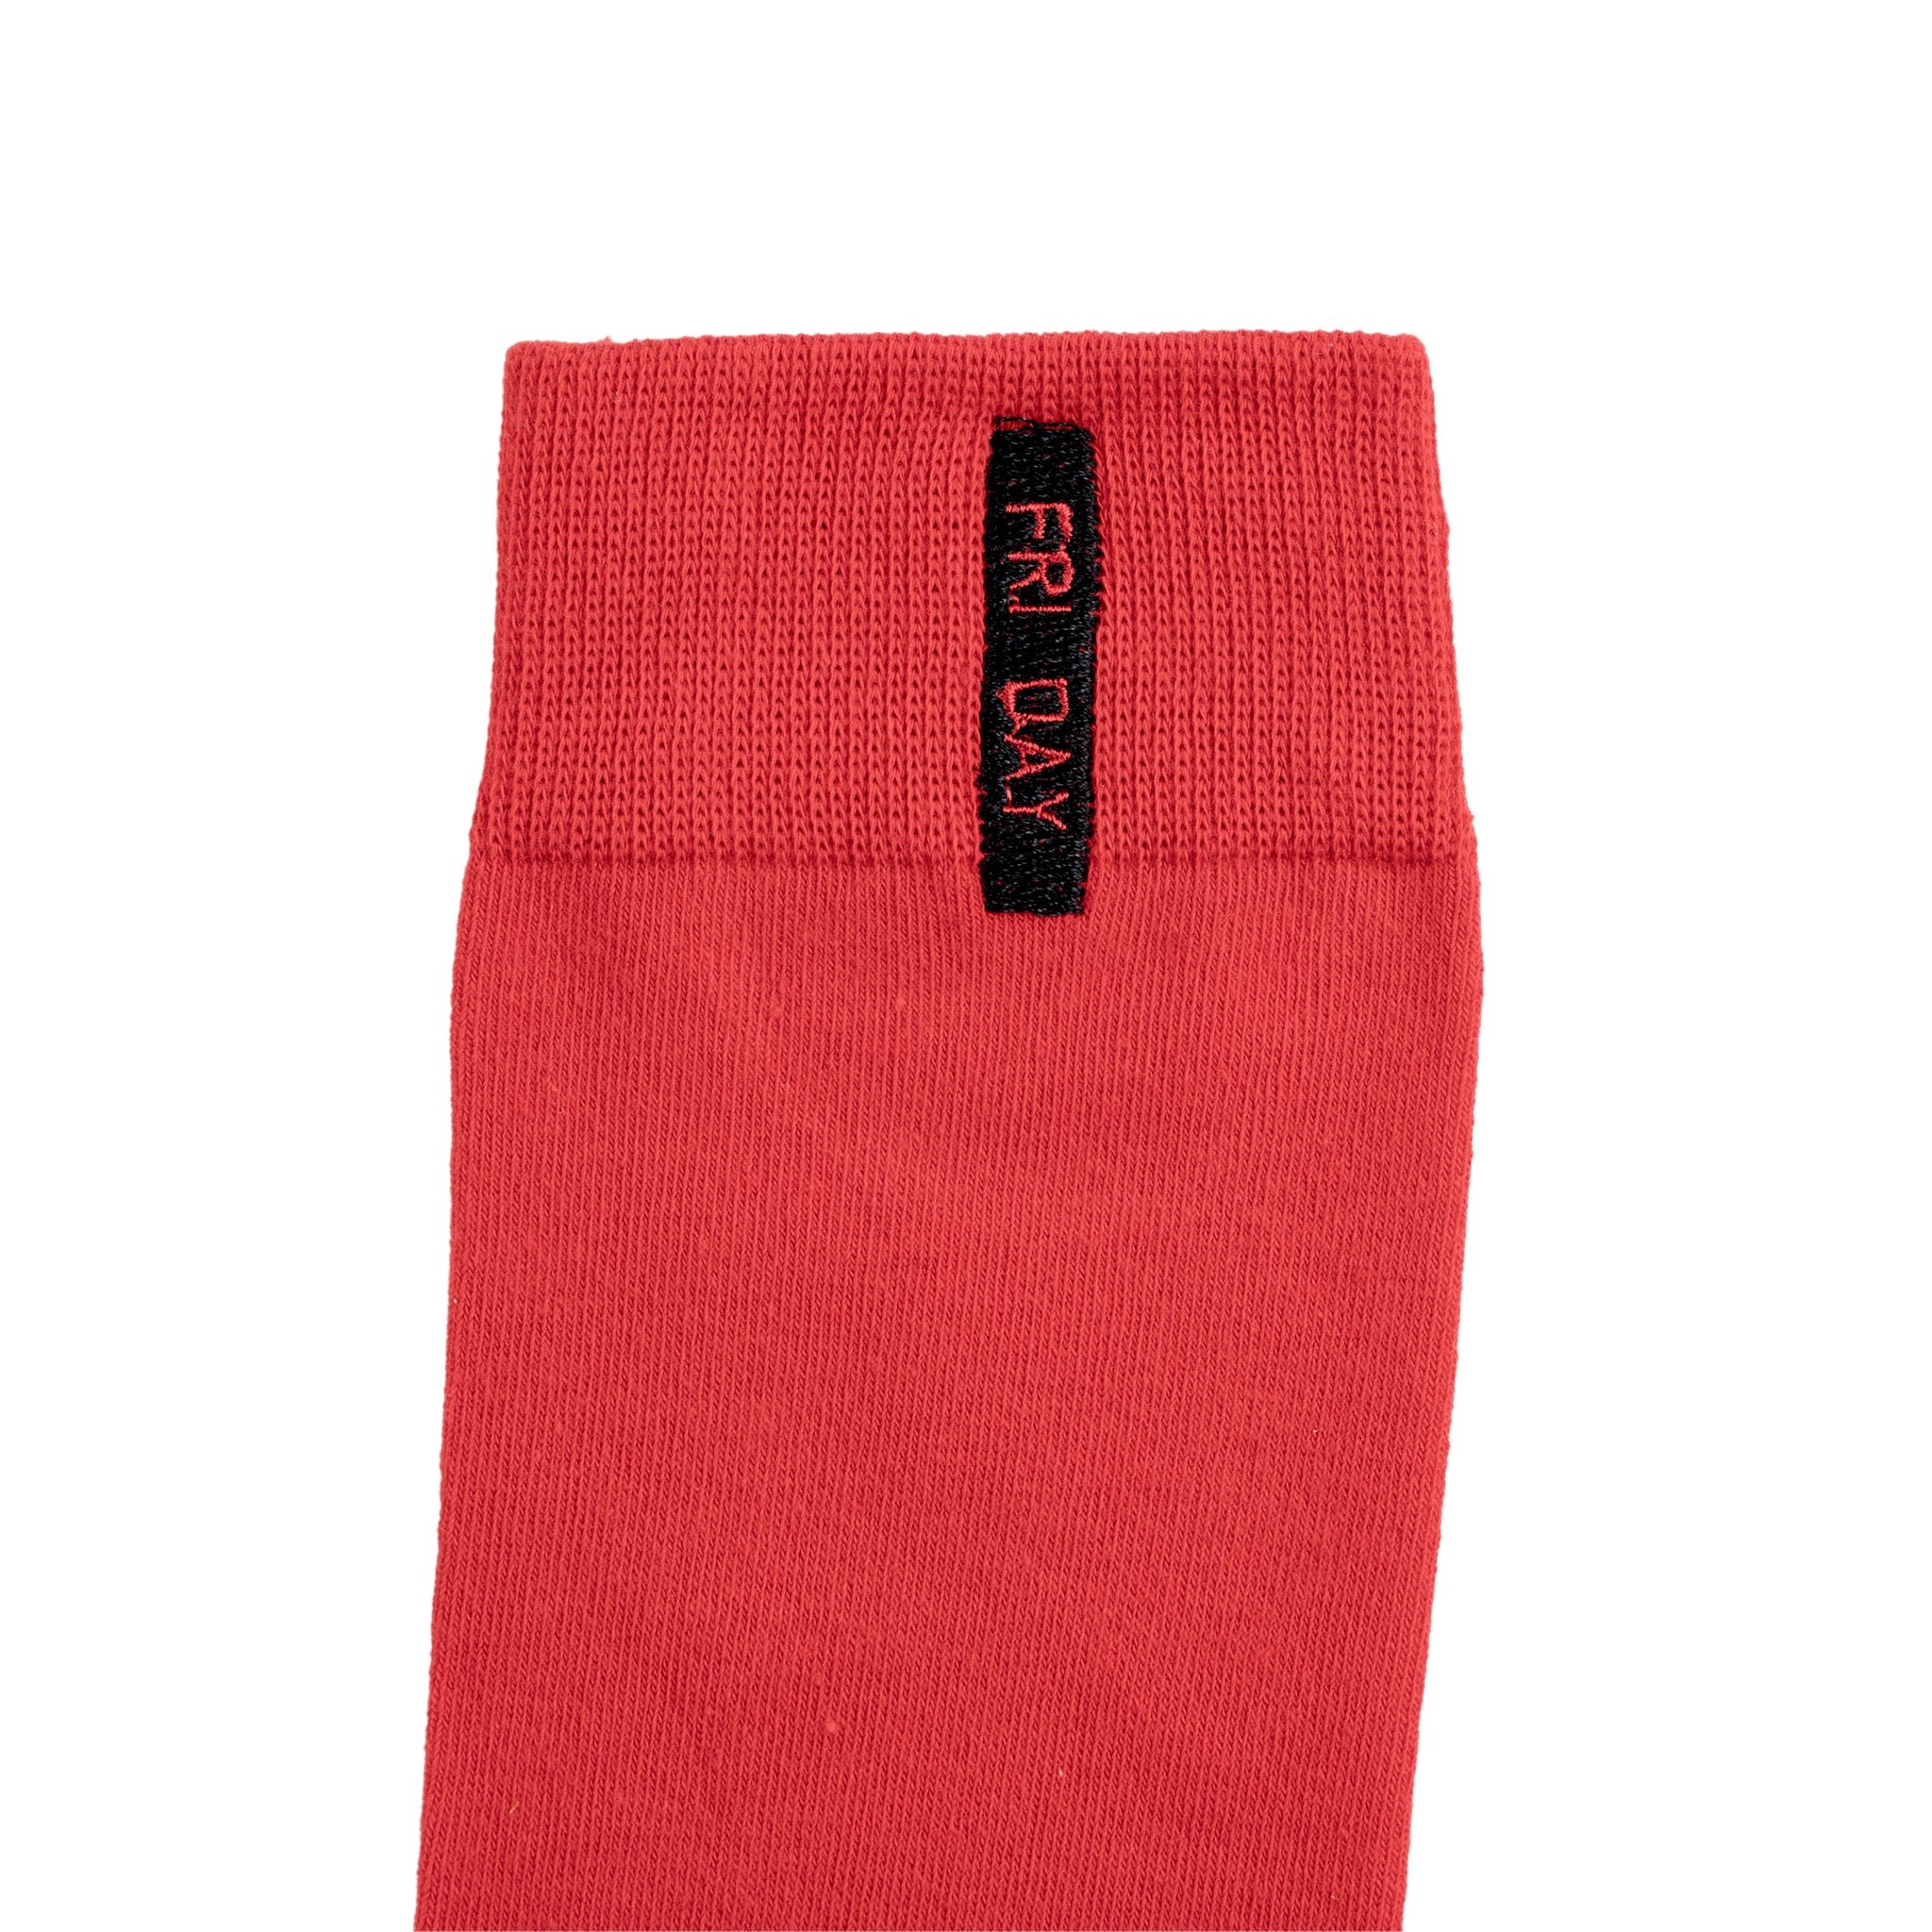 Chokore Stylish Cotton Socks (Red)